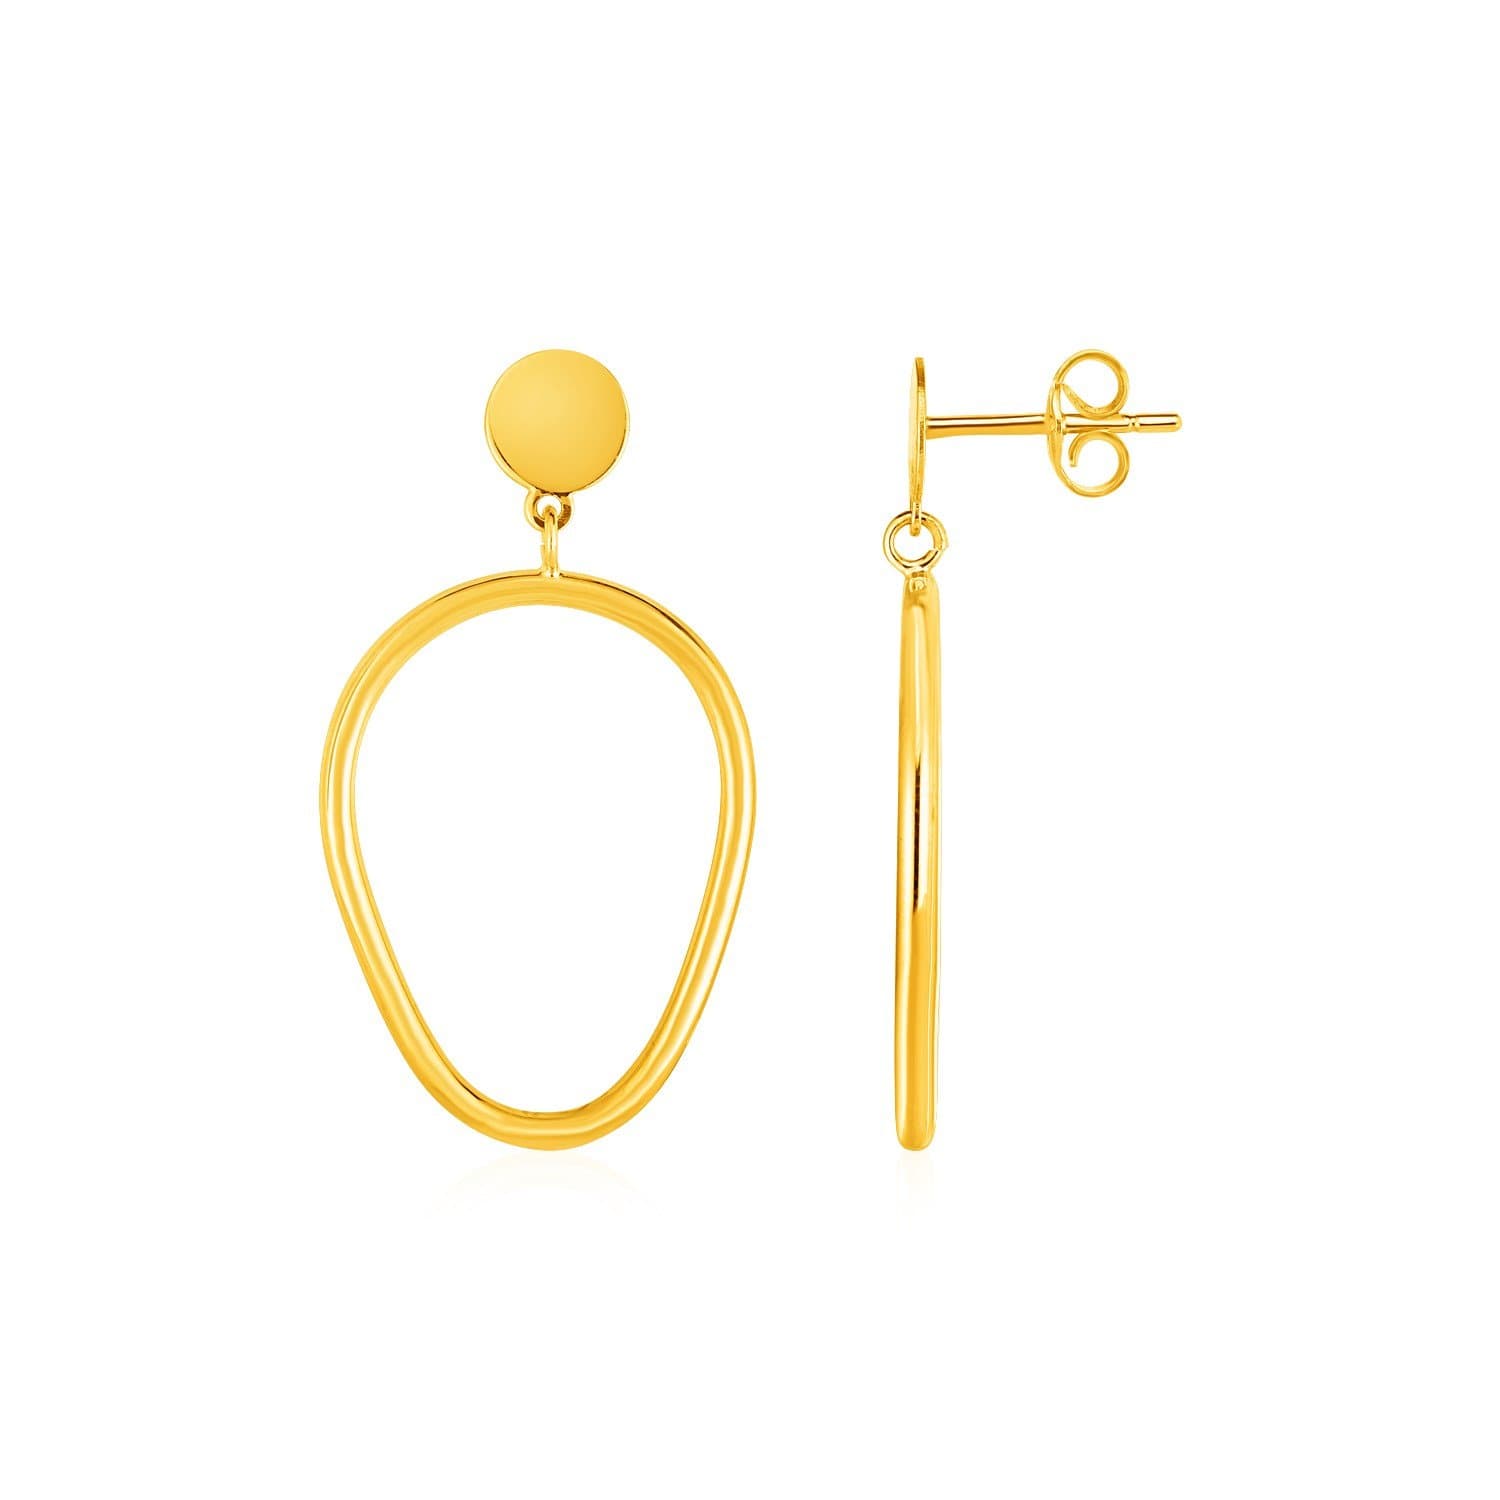 Shiny Pear Shaped Drop Earrings in 14k Yellow Gold